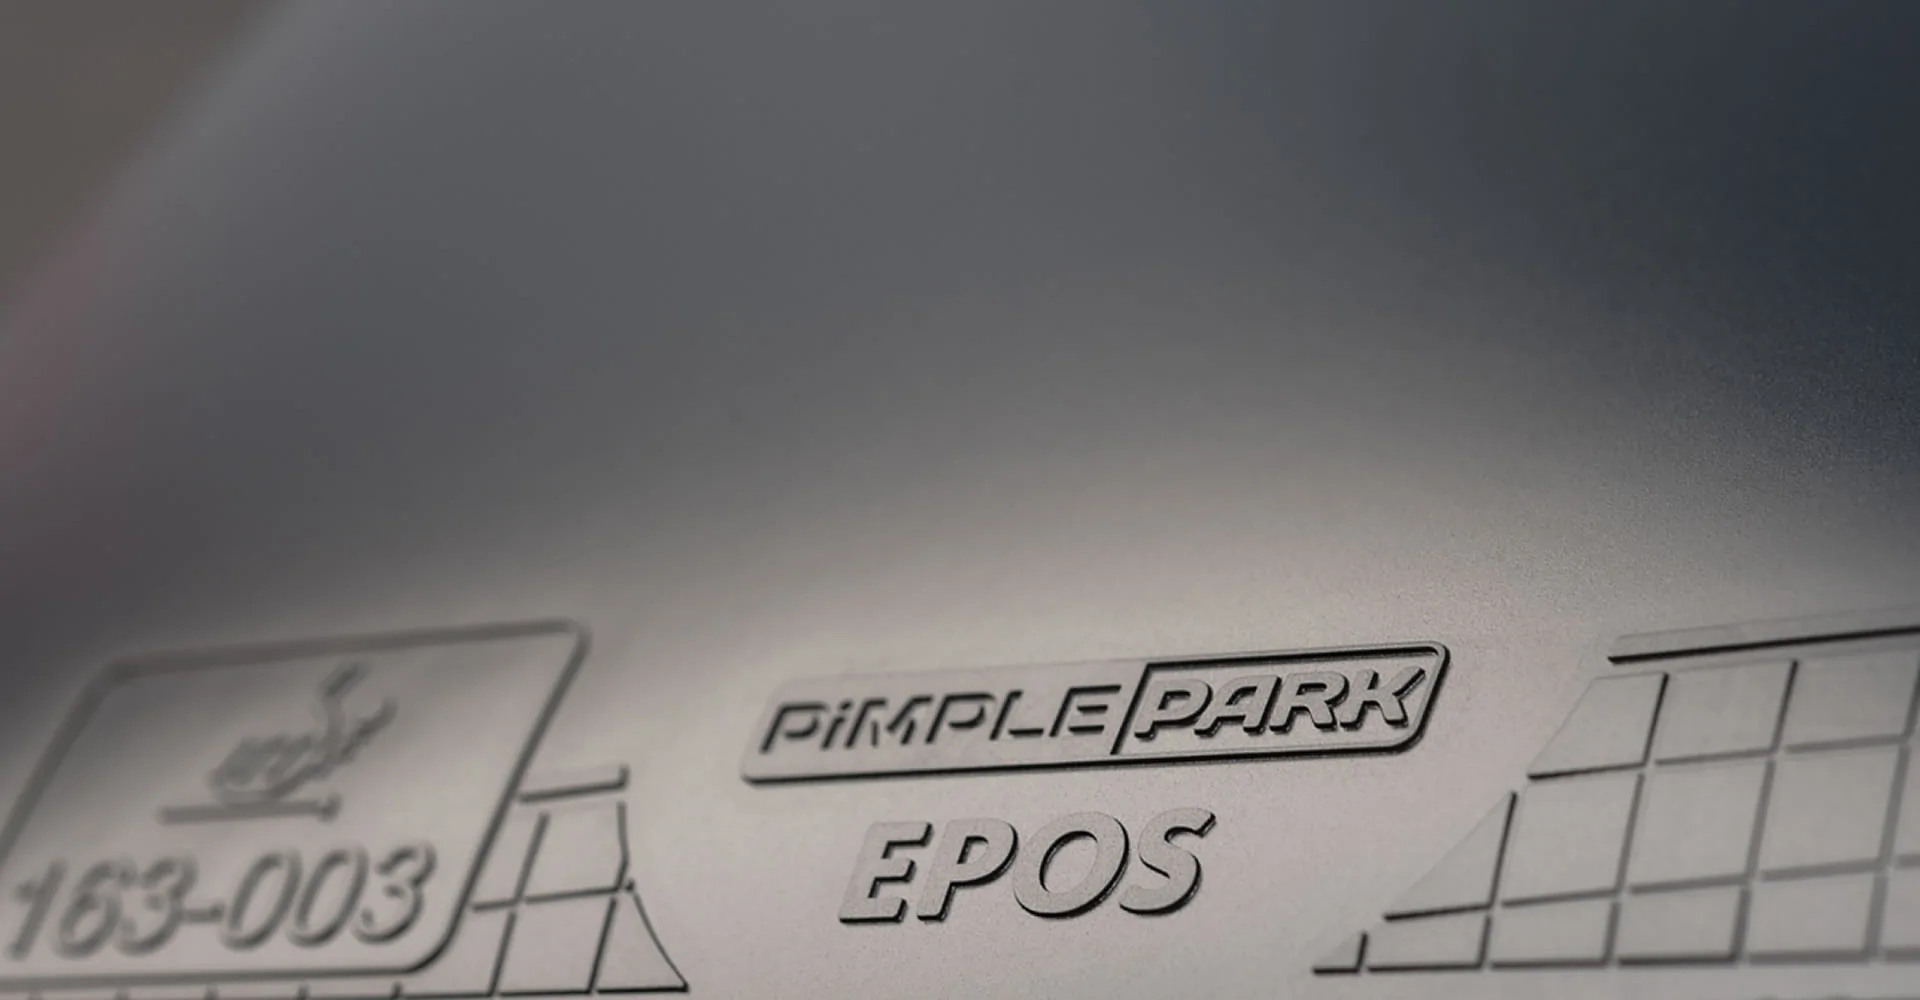 PIMPLEPARK EPOS гладкая накладка для настольного тенниса для универсальной и защитной игры